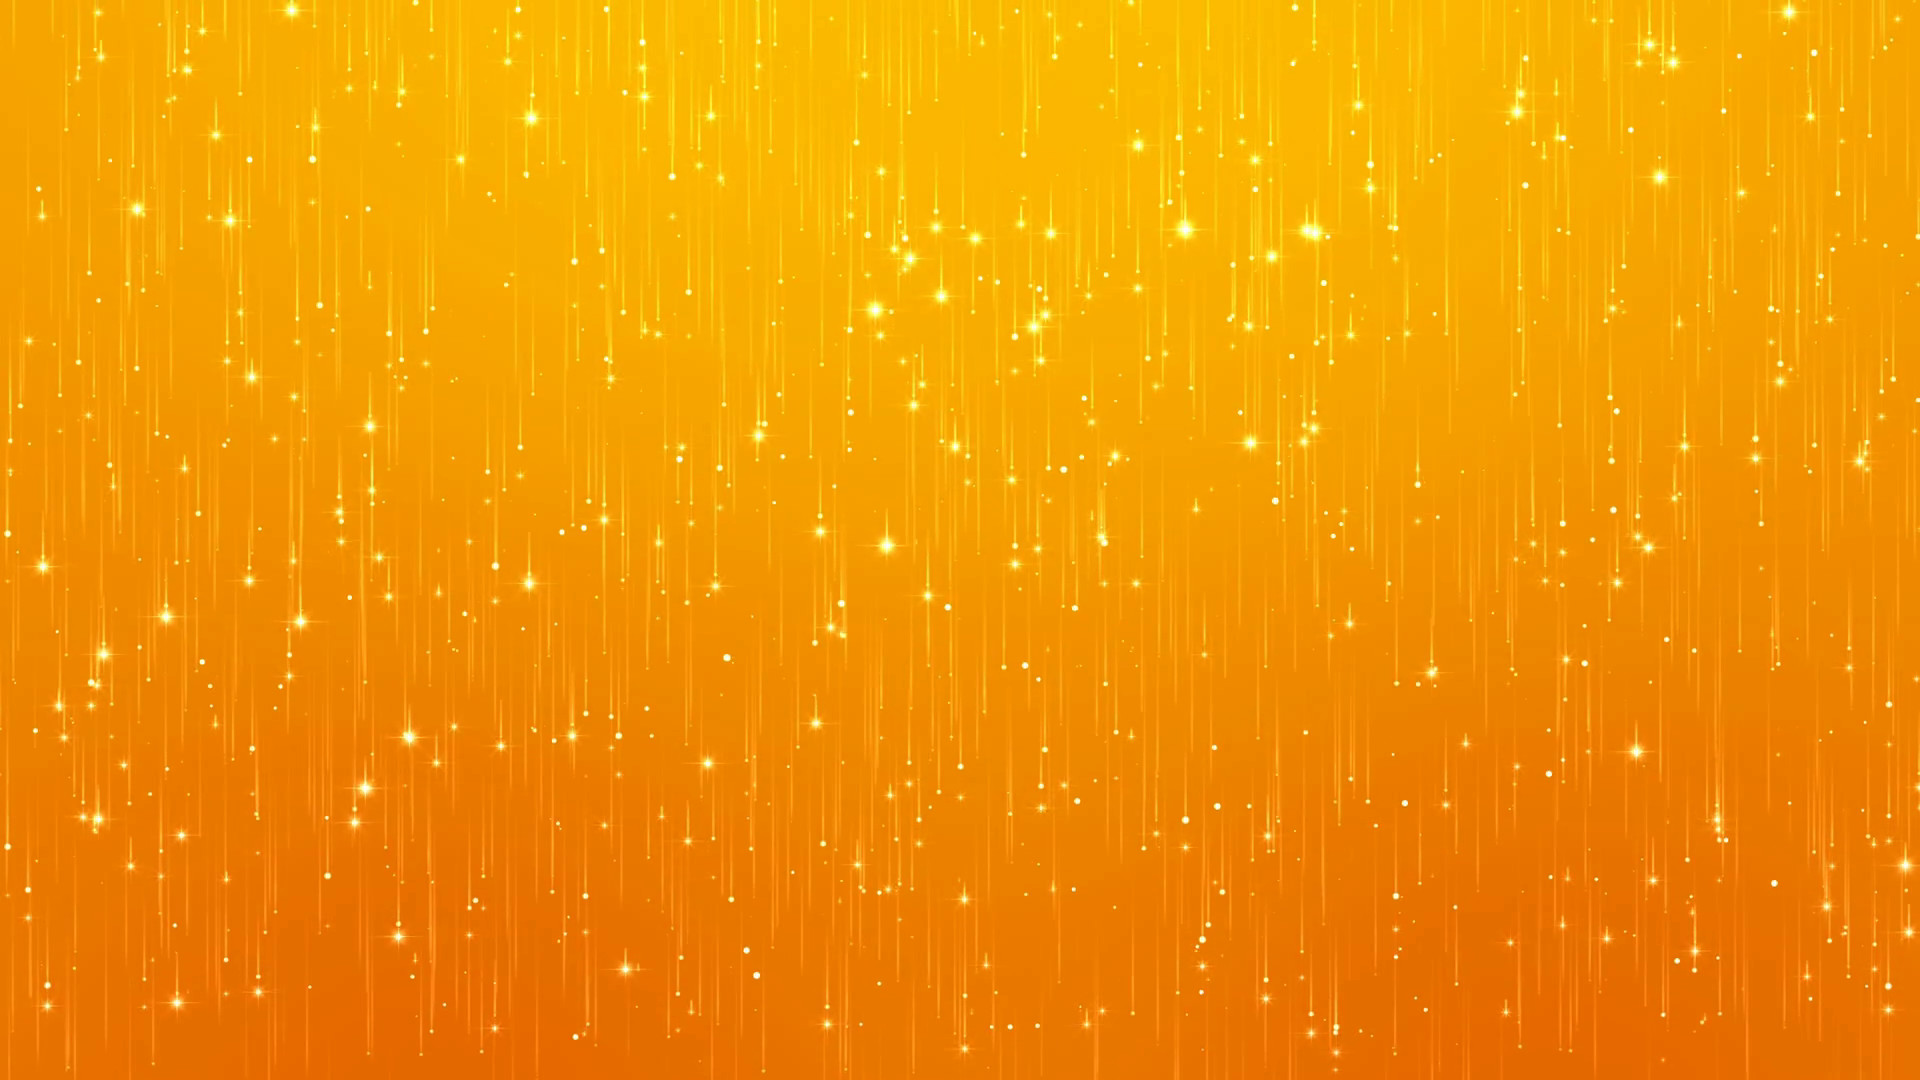 Hình nền màu cam: Màu cam luôn mang lại cảm giác ấm áp và bình yên cho không gian sống của bạn. Với những hình nền màu cam độc đáo, bạn có thể tạo ra một không gian làm việc hoàn hảo hoặc một bức tranh nghệ thuật ấn tượng. Hãy xem các hình ảnh liên quan đến màu cam để tìm được ý tưởng tuyệt vời cho không gian sống của bạn.